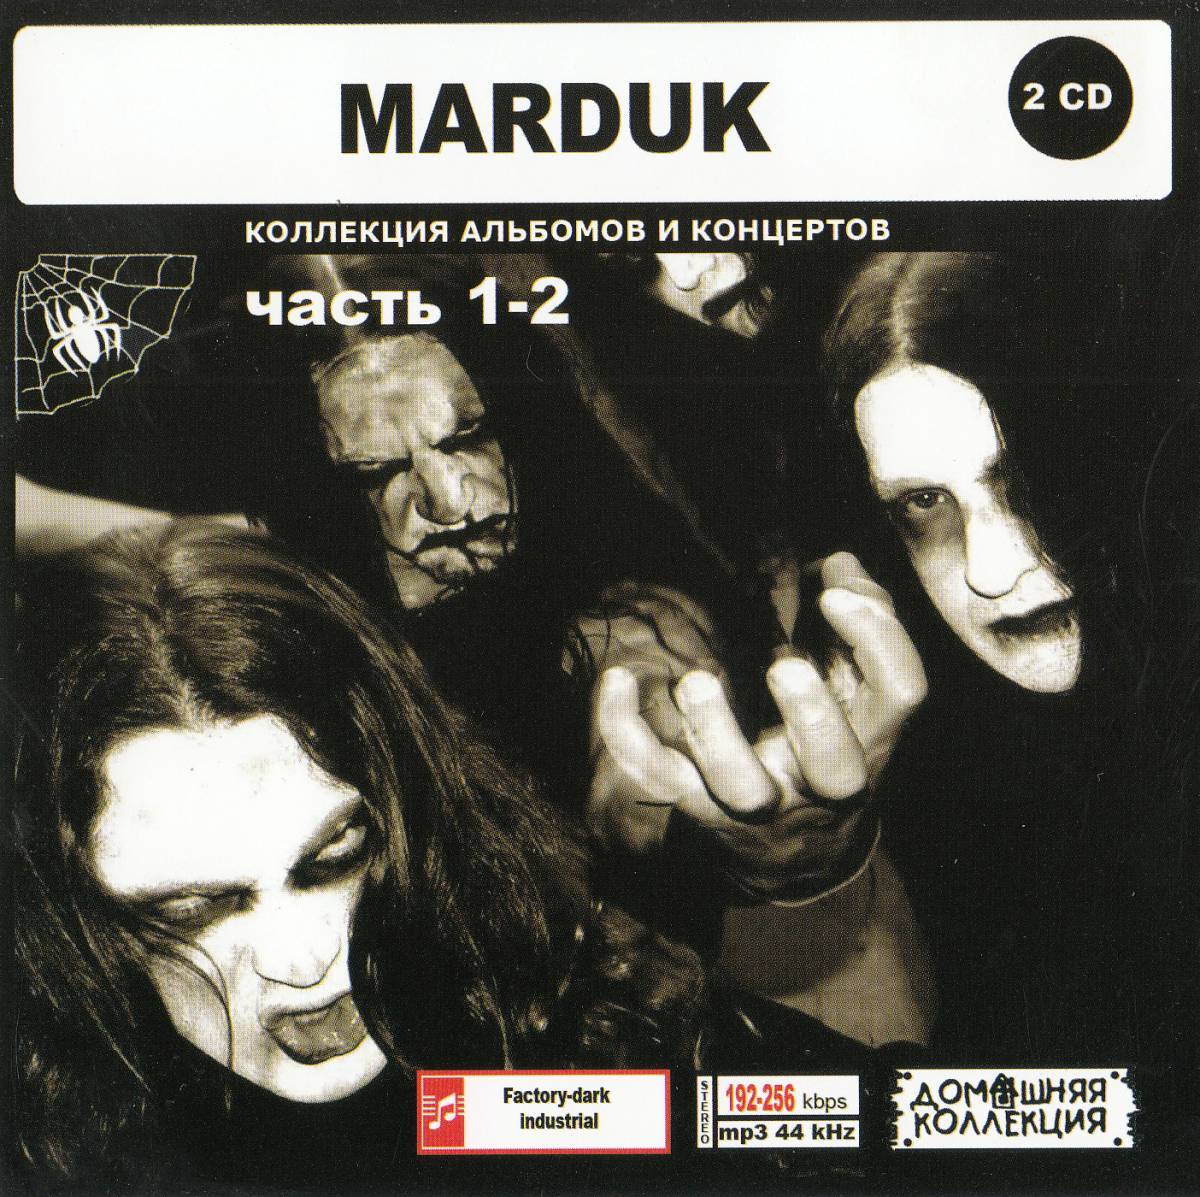 【MP3-CD】 MARDUK マーダック Part-1-2 2CD 23アルバム収録_画像1